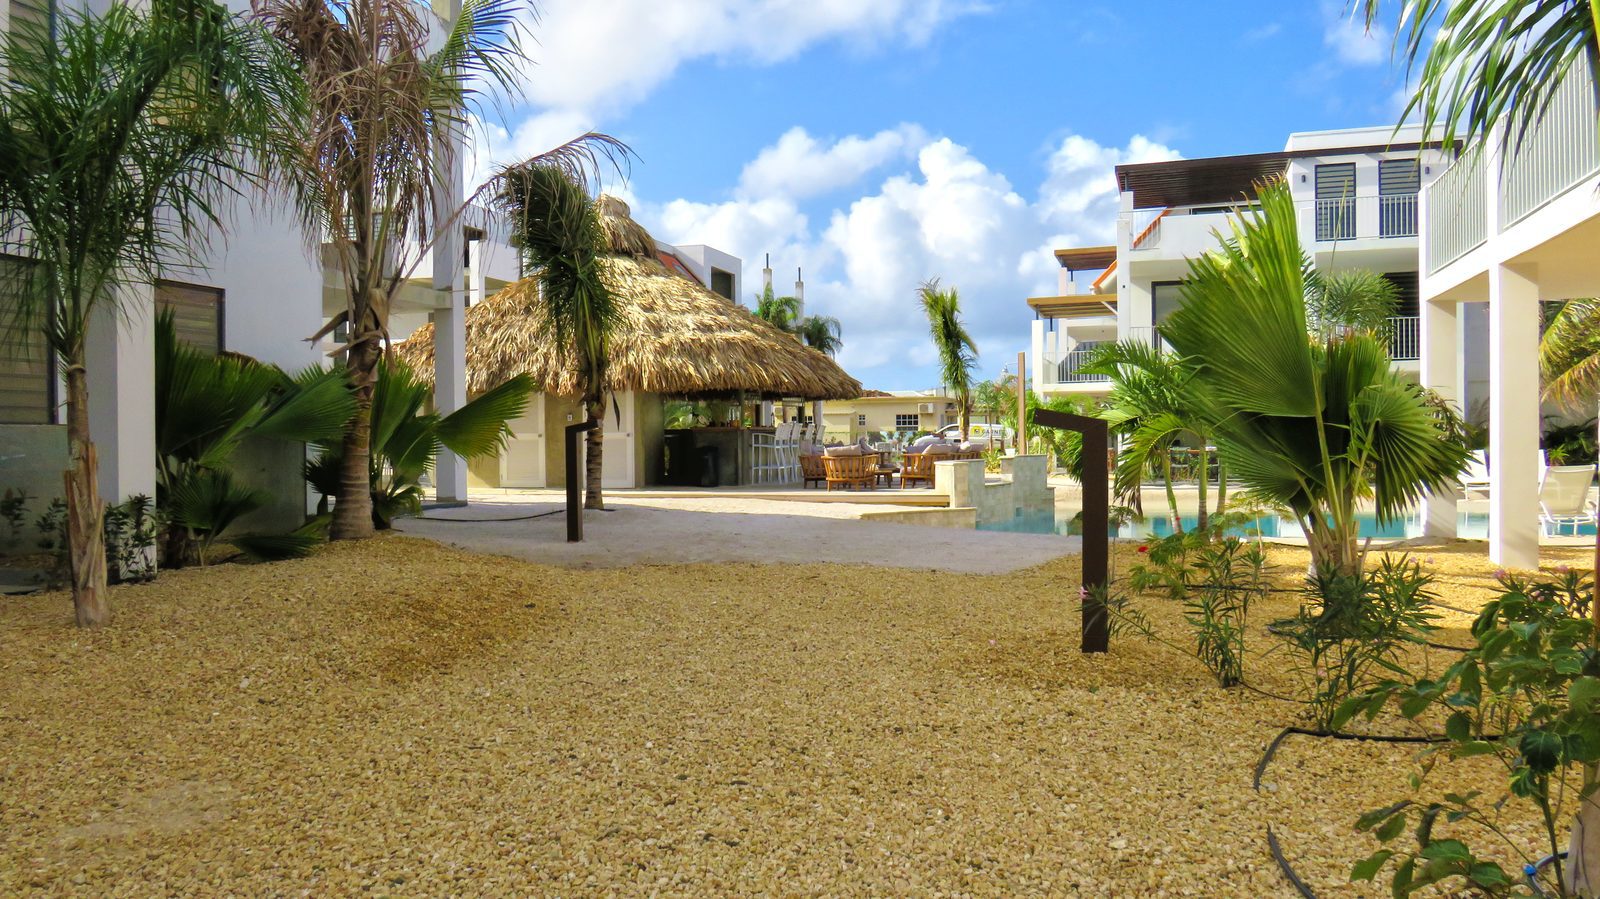 Resort Bonaire es uno de los muchos complejos turísticos en esta hermosa isla. Echa un vistazo a más fotos de nuestras instalaciones y las opciones de esta isla.

